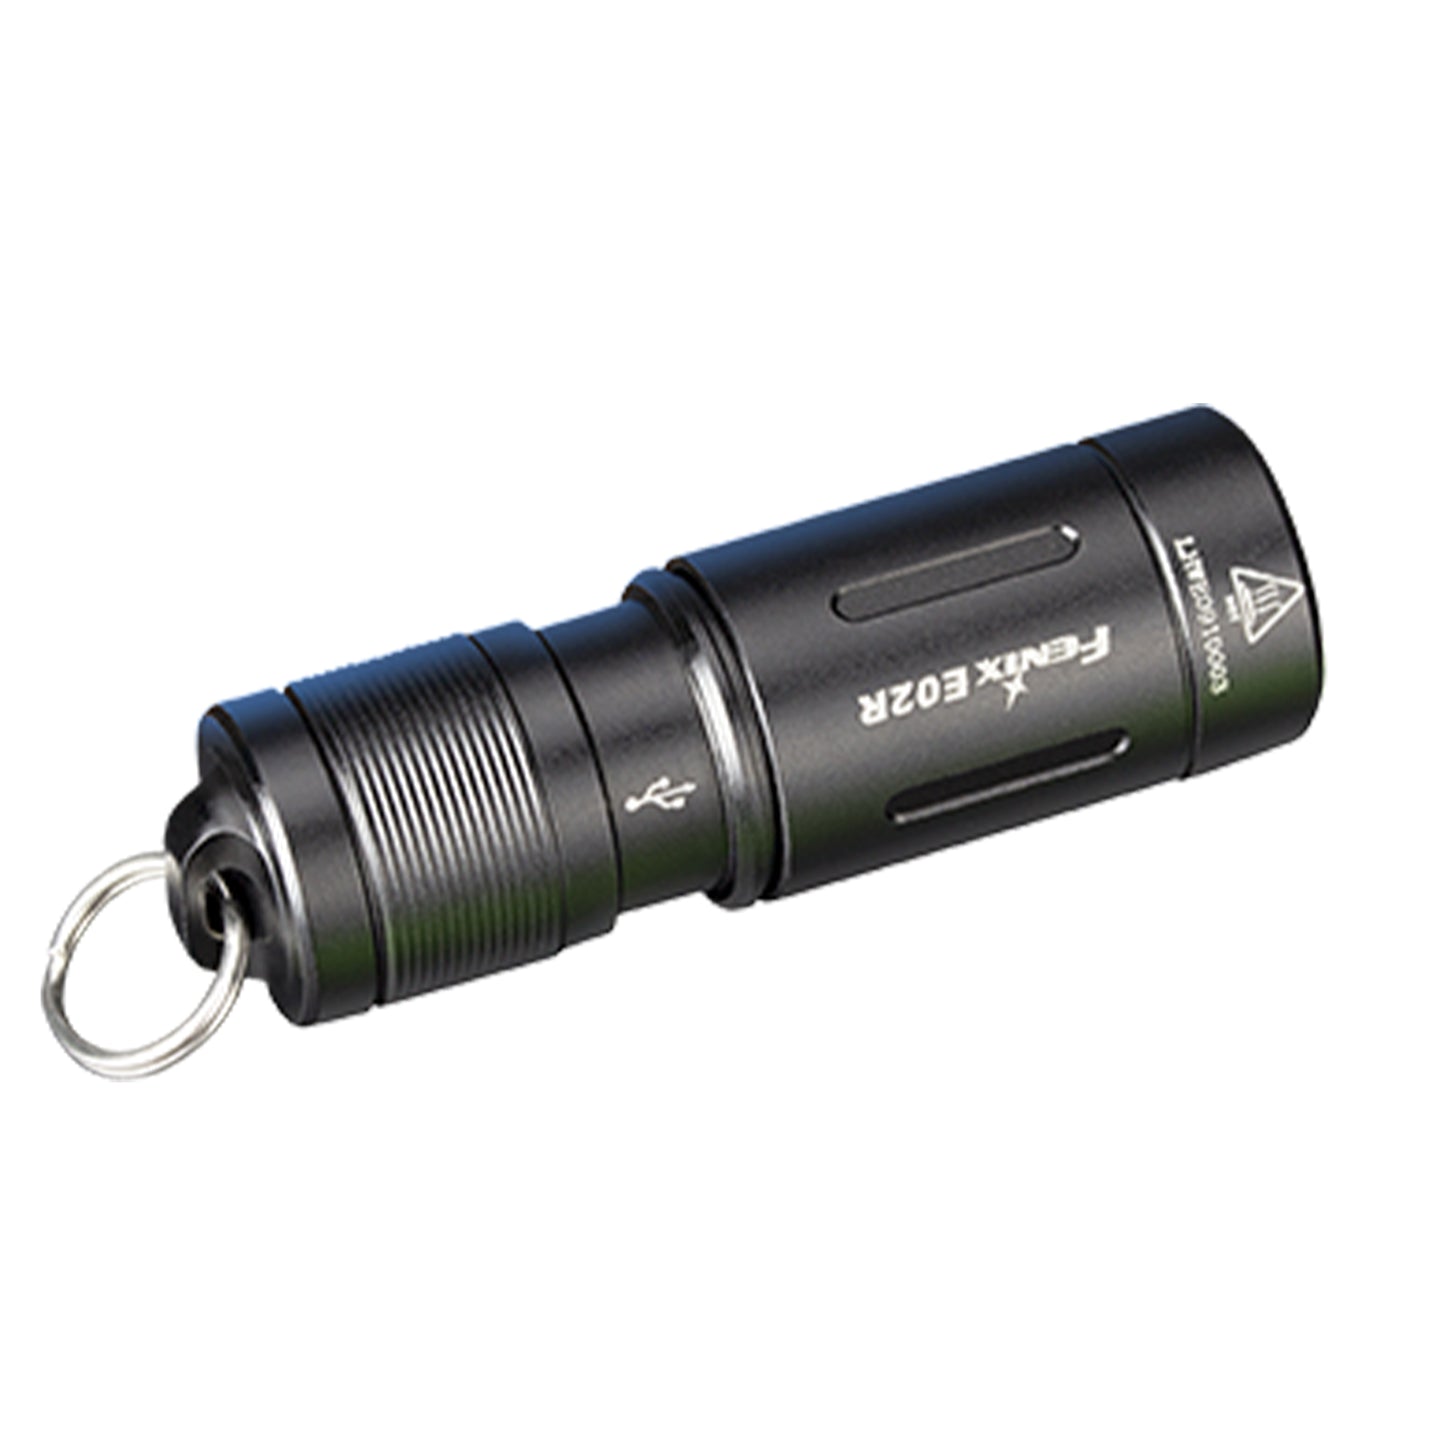 Fenix E02R：超亮度 USB 可充電式鑰匙扣手電筒